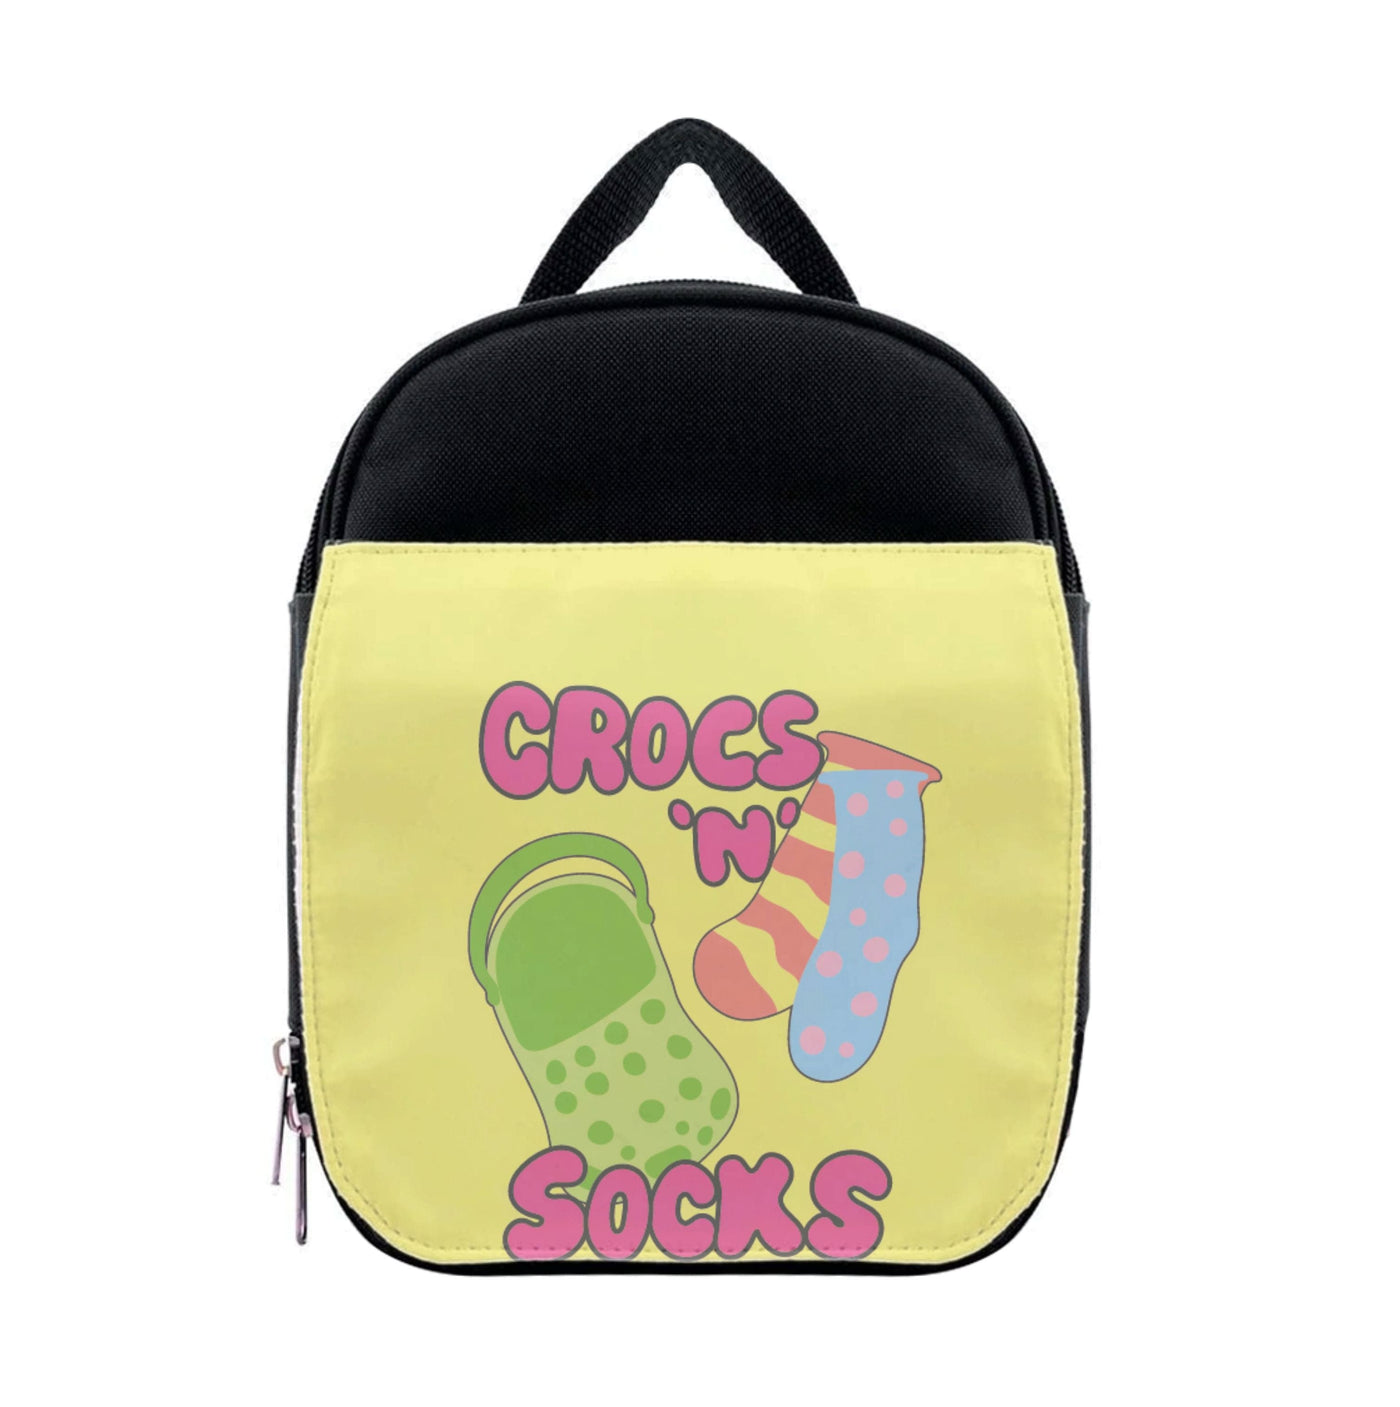 Crocs And Socks - Crocs Lunchbox